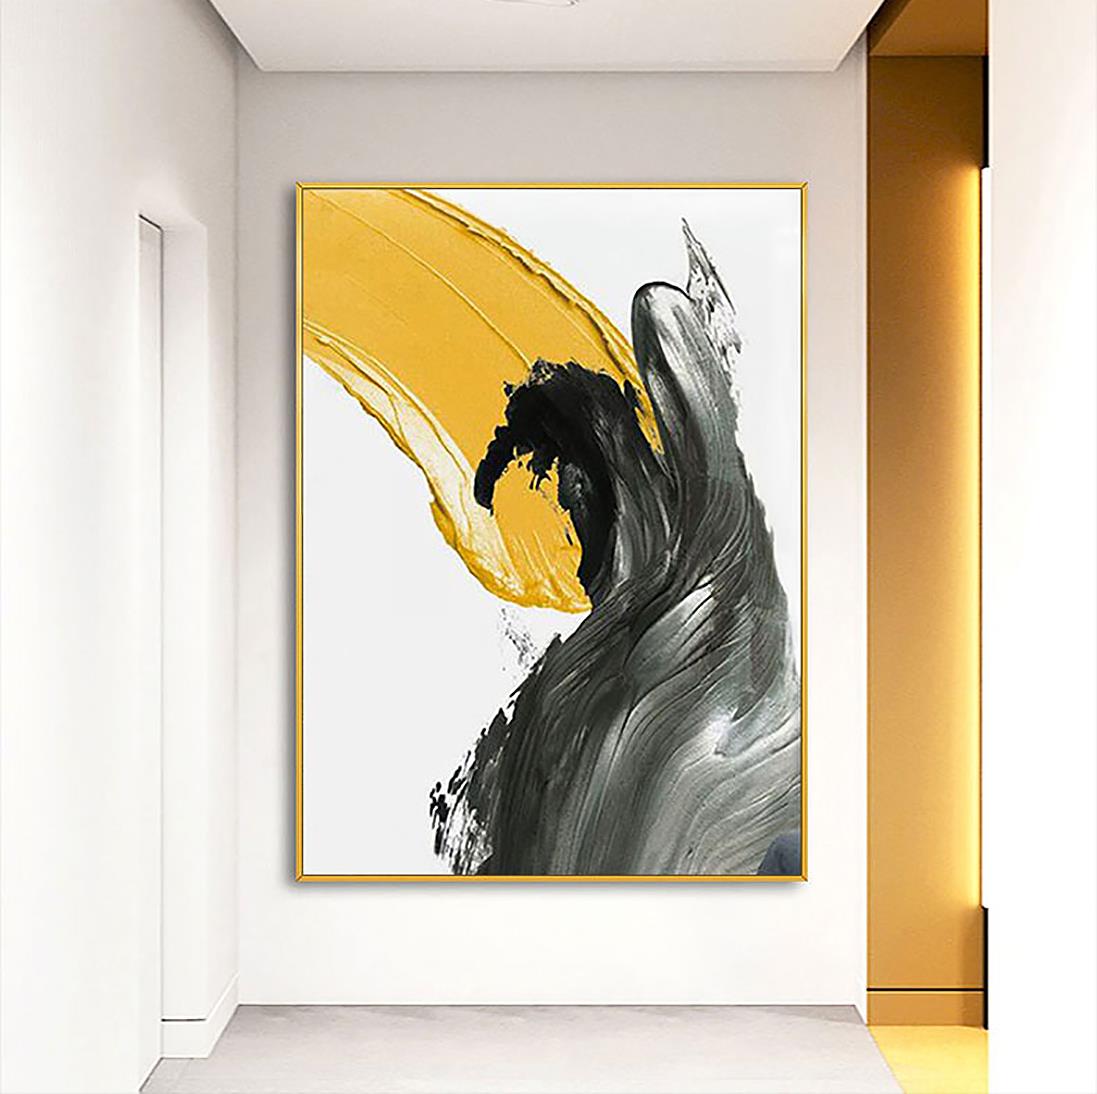 Pinselstrich schwarz gelb abstrakt von Palettenmesser Wandkunst Minimalismusus Textur Ölgemälde